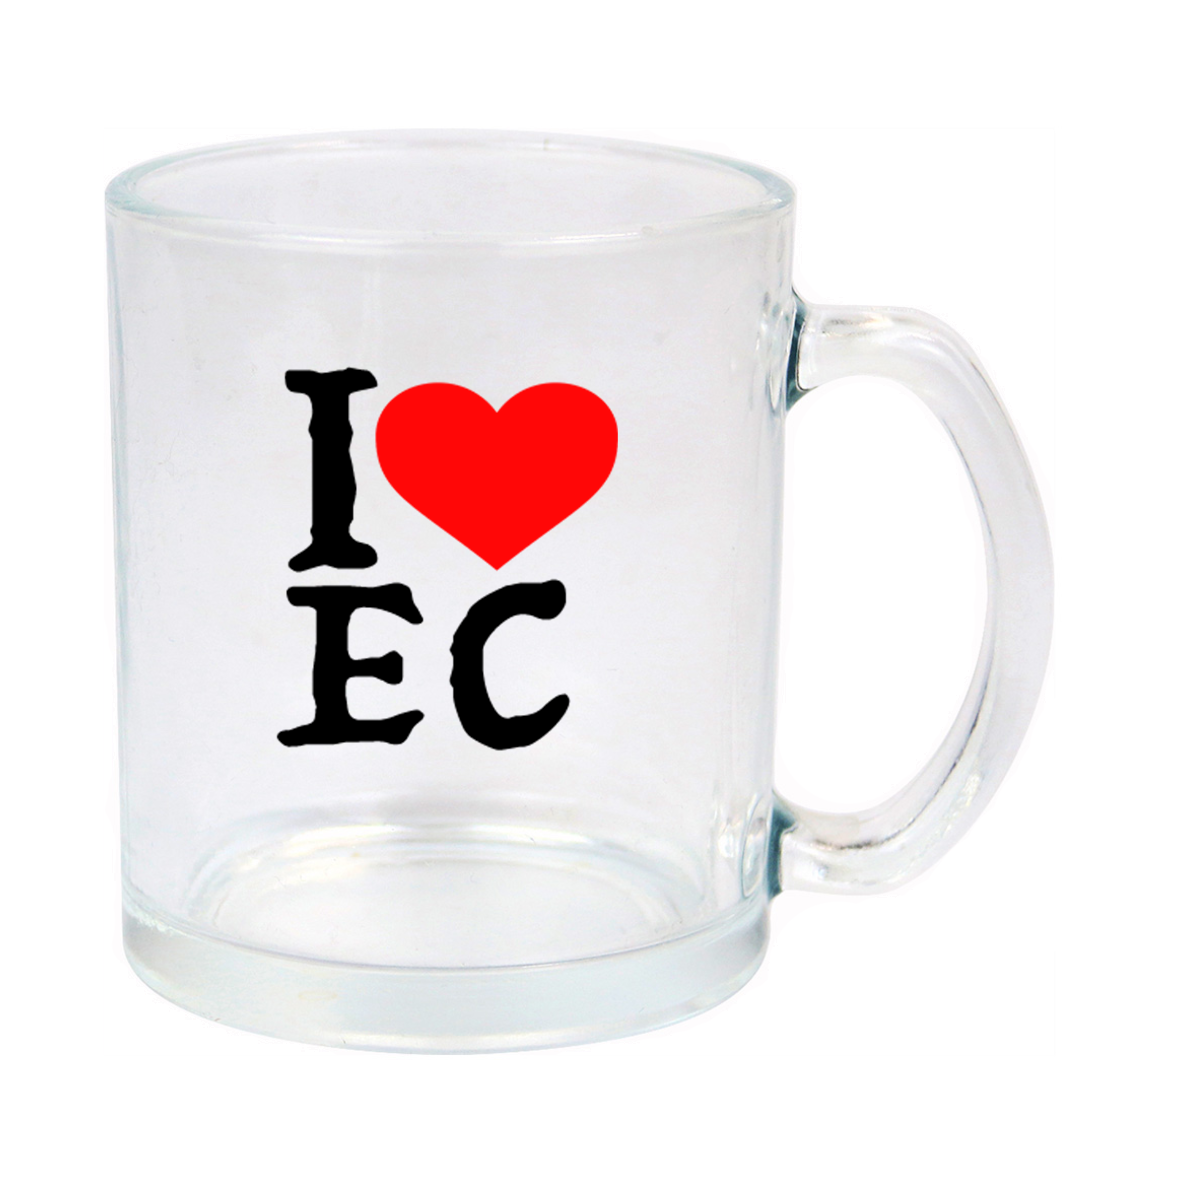 I Love Ecuador Glass Mug 11oz